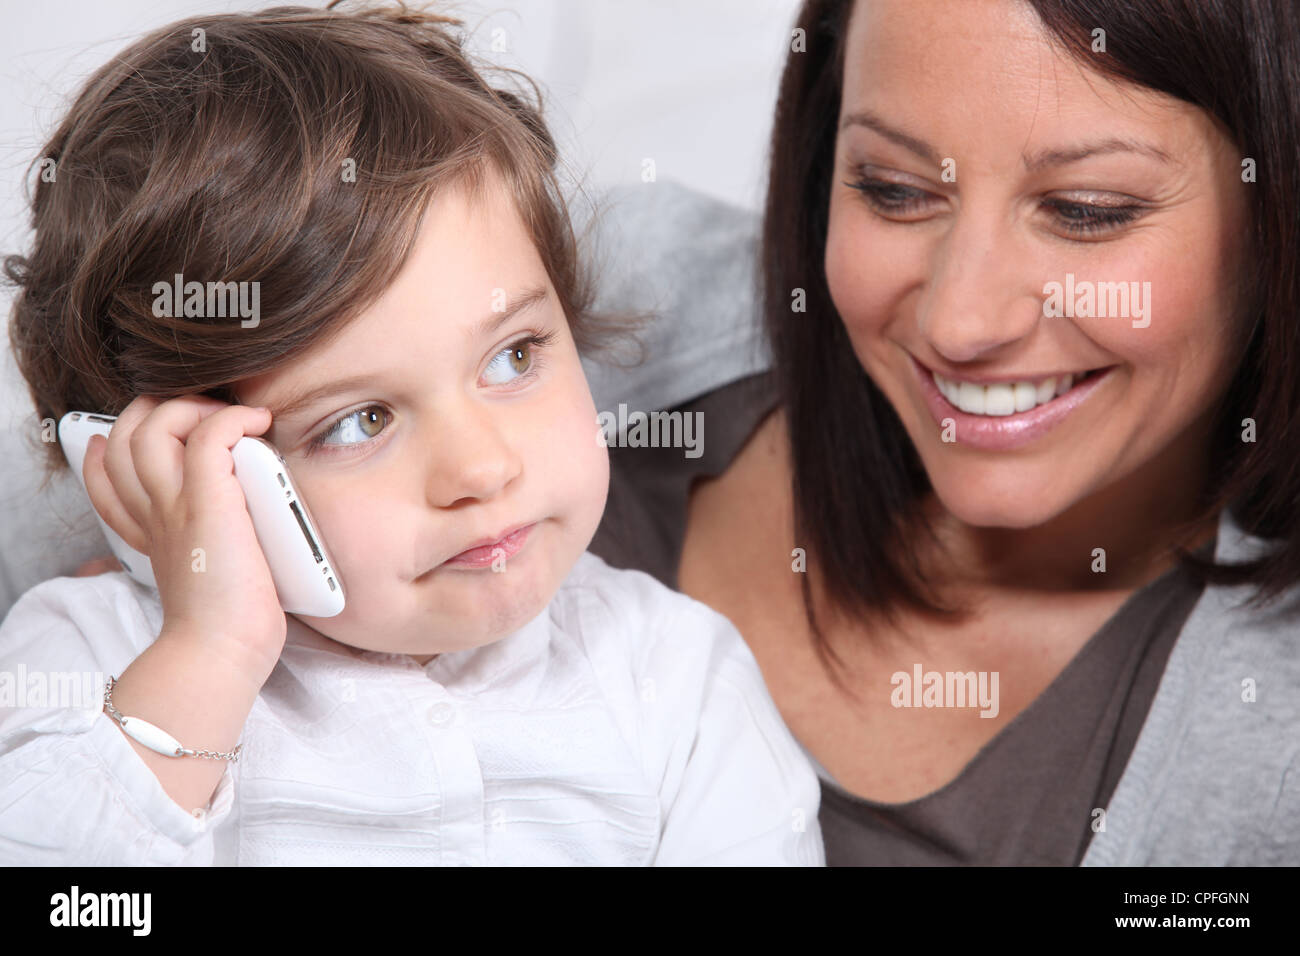 Мамы с телефонами без регистрации. Мама с телефоном. Фото с маминого телефона. Картинки на телефон мама с детьми. Ребенок играющий и мама с телефоном.